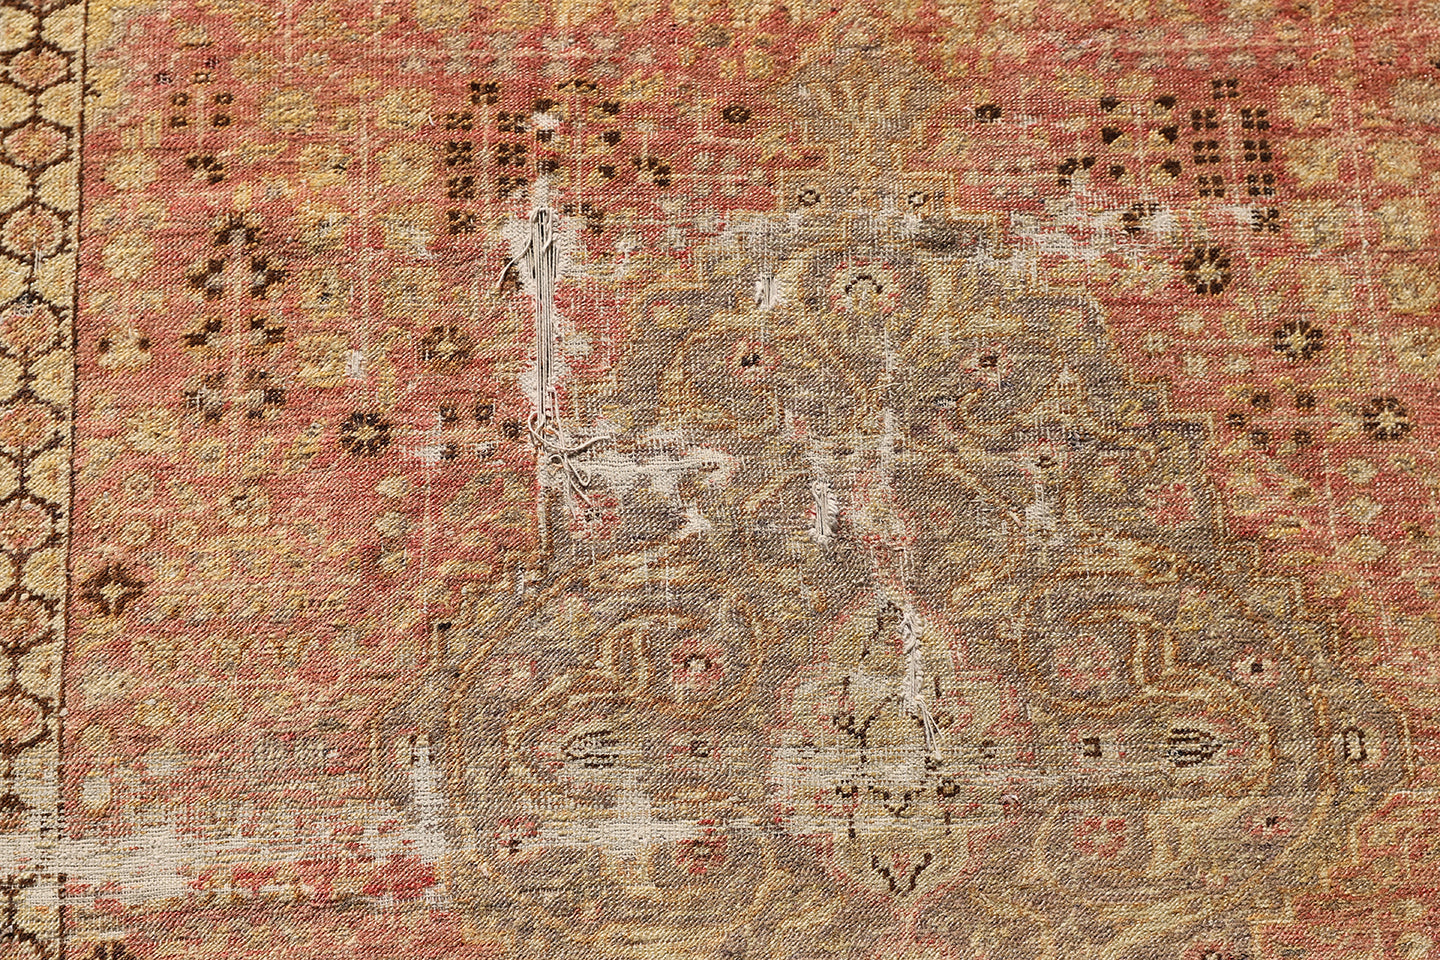 4'x6' Antique and Semi Antique Turkish Rug